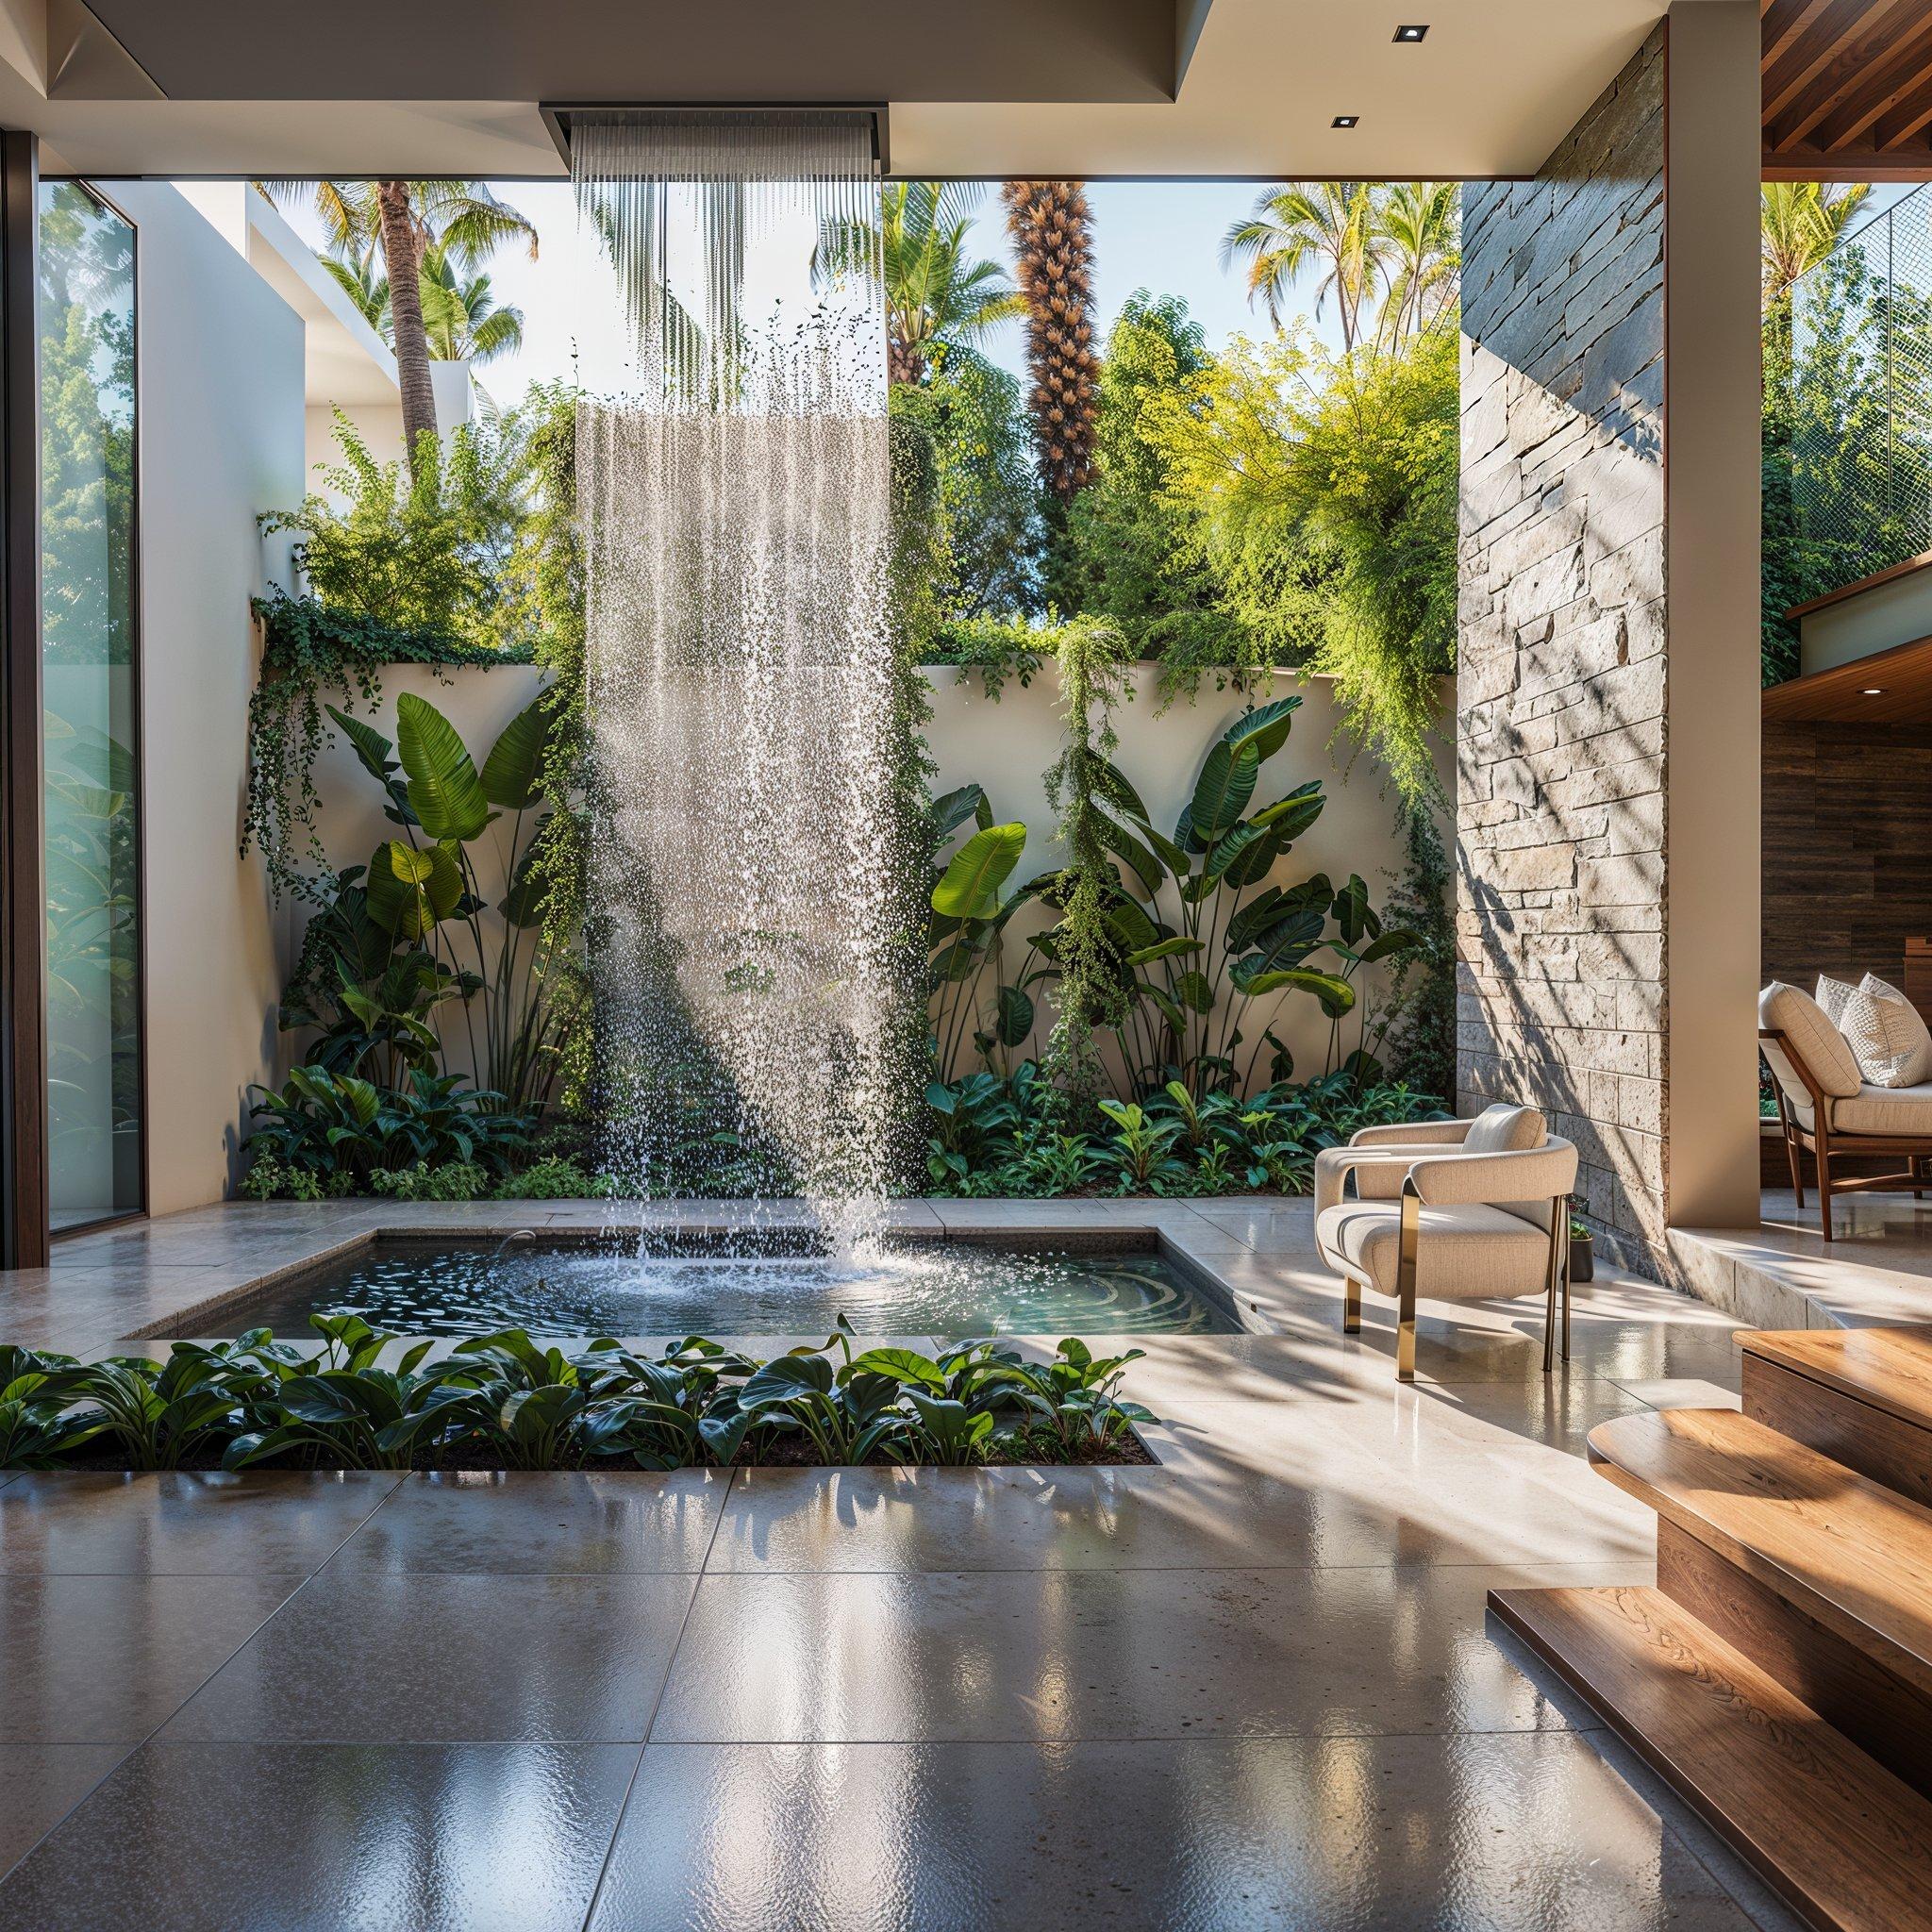 Design biofilico innovativo con cascata e giardino verticale in uno spazio abitativo moderno di Stefano Bocci, riflettendo l'architettura sostenibile e l'eleganza dell'interior design